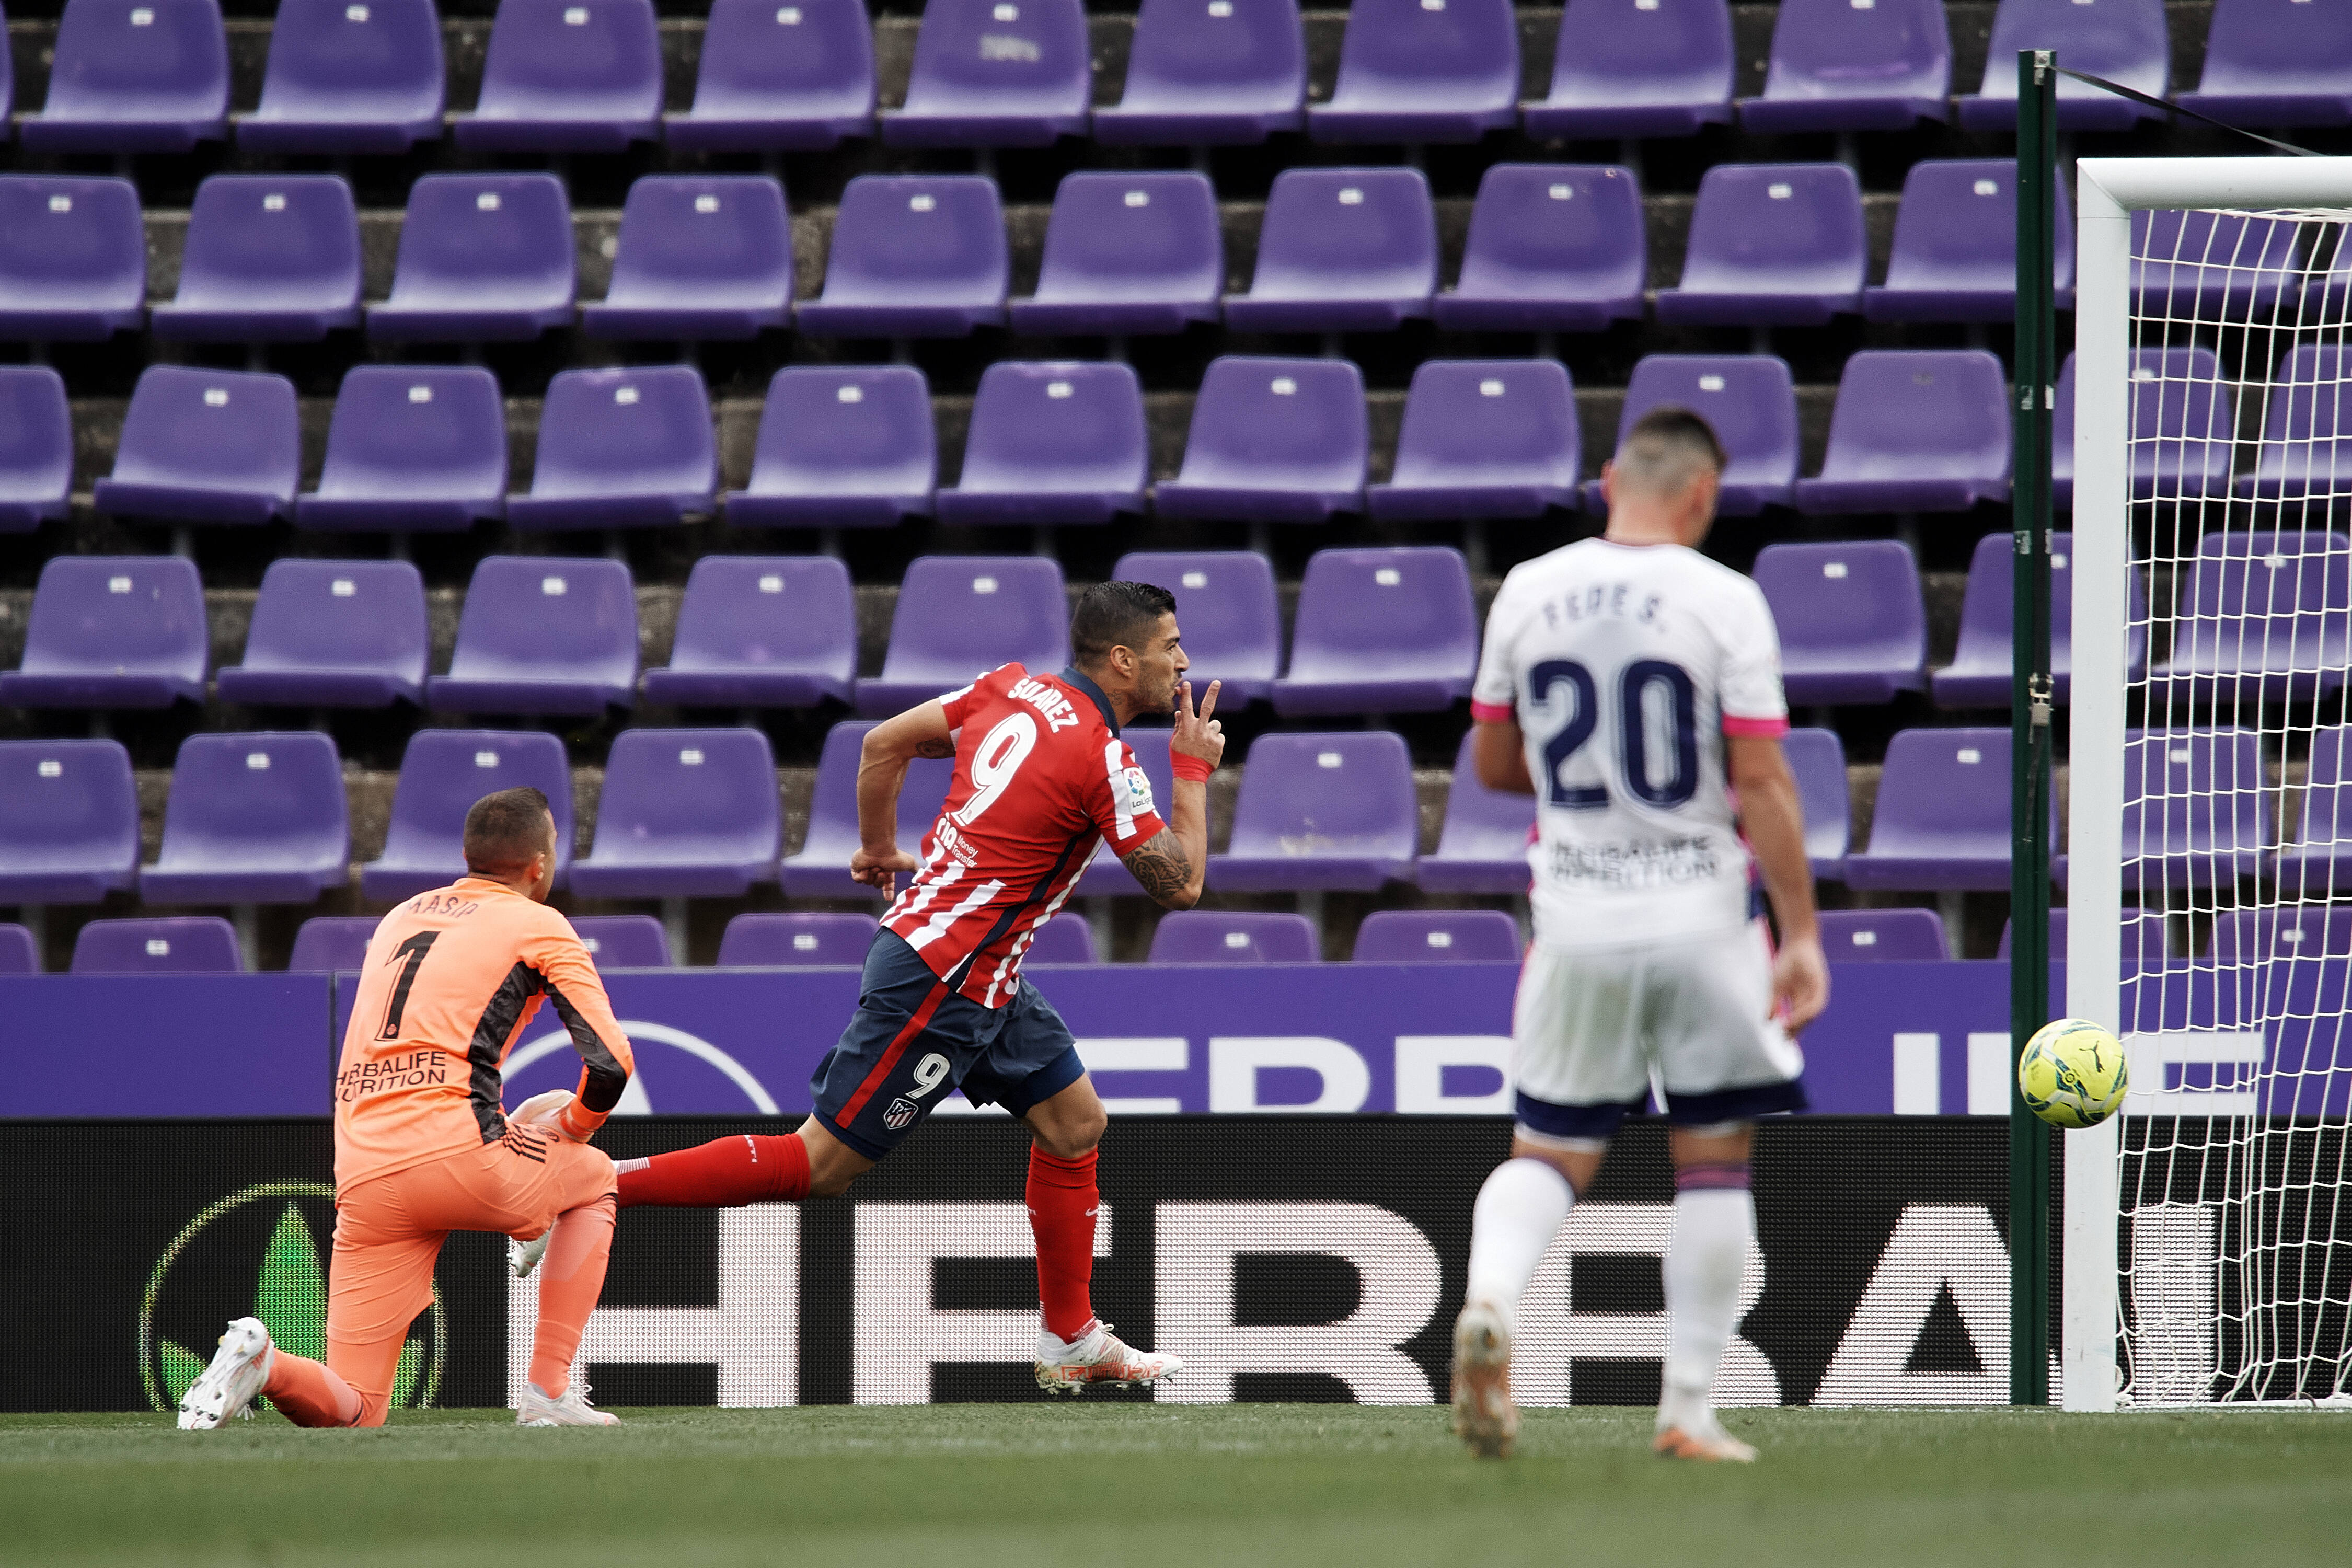 Real Valladolid Cf V Atletico De Madrid La Liga Santander Luis Suarez Of Atletico Madrid Shooting To Goal During The L